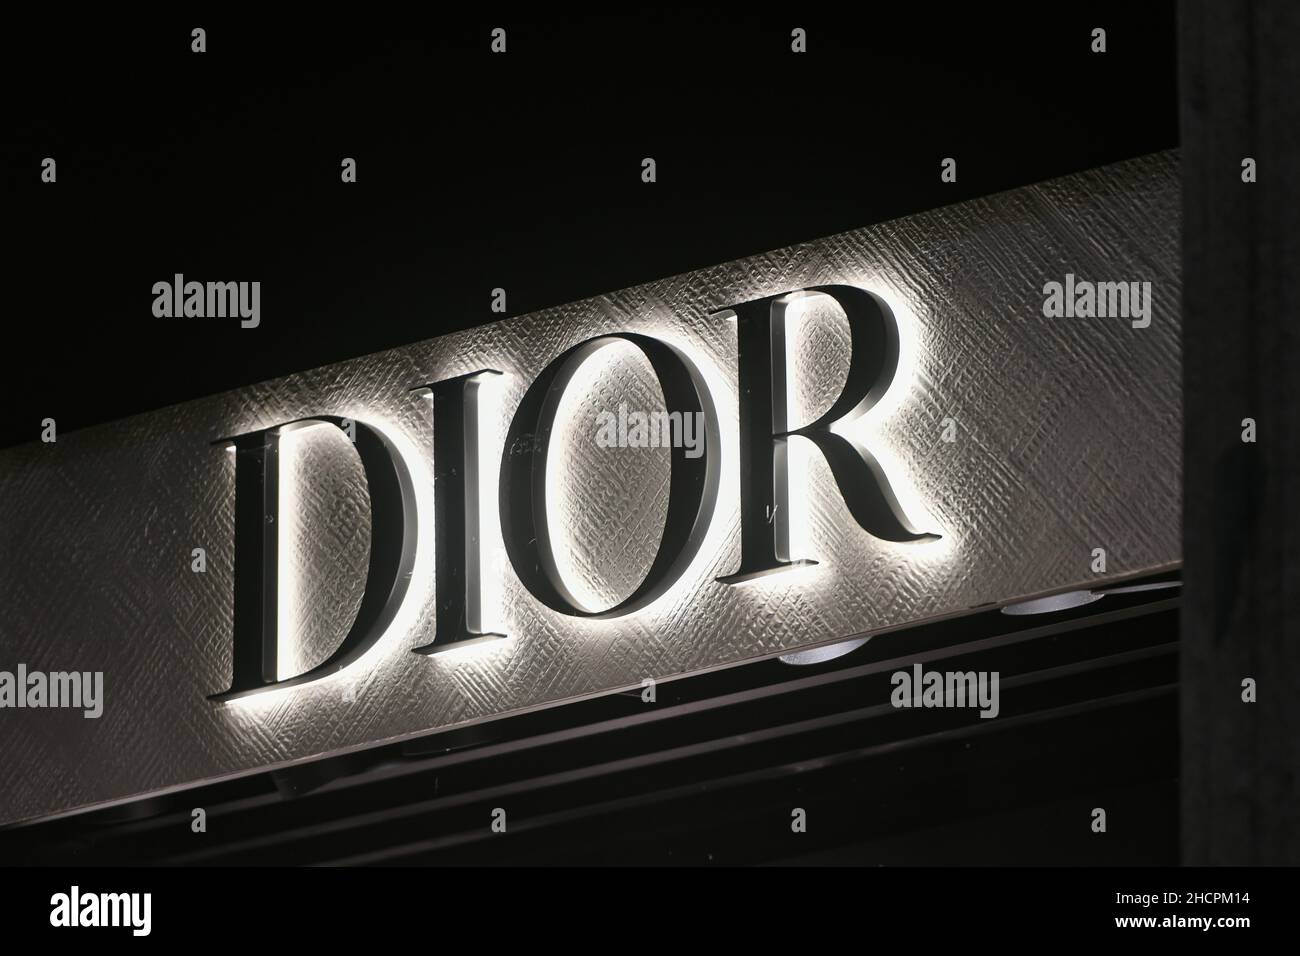 20 Best dior logo ideas  dior logo, dior, fashion logo